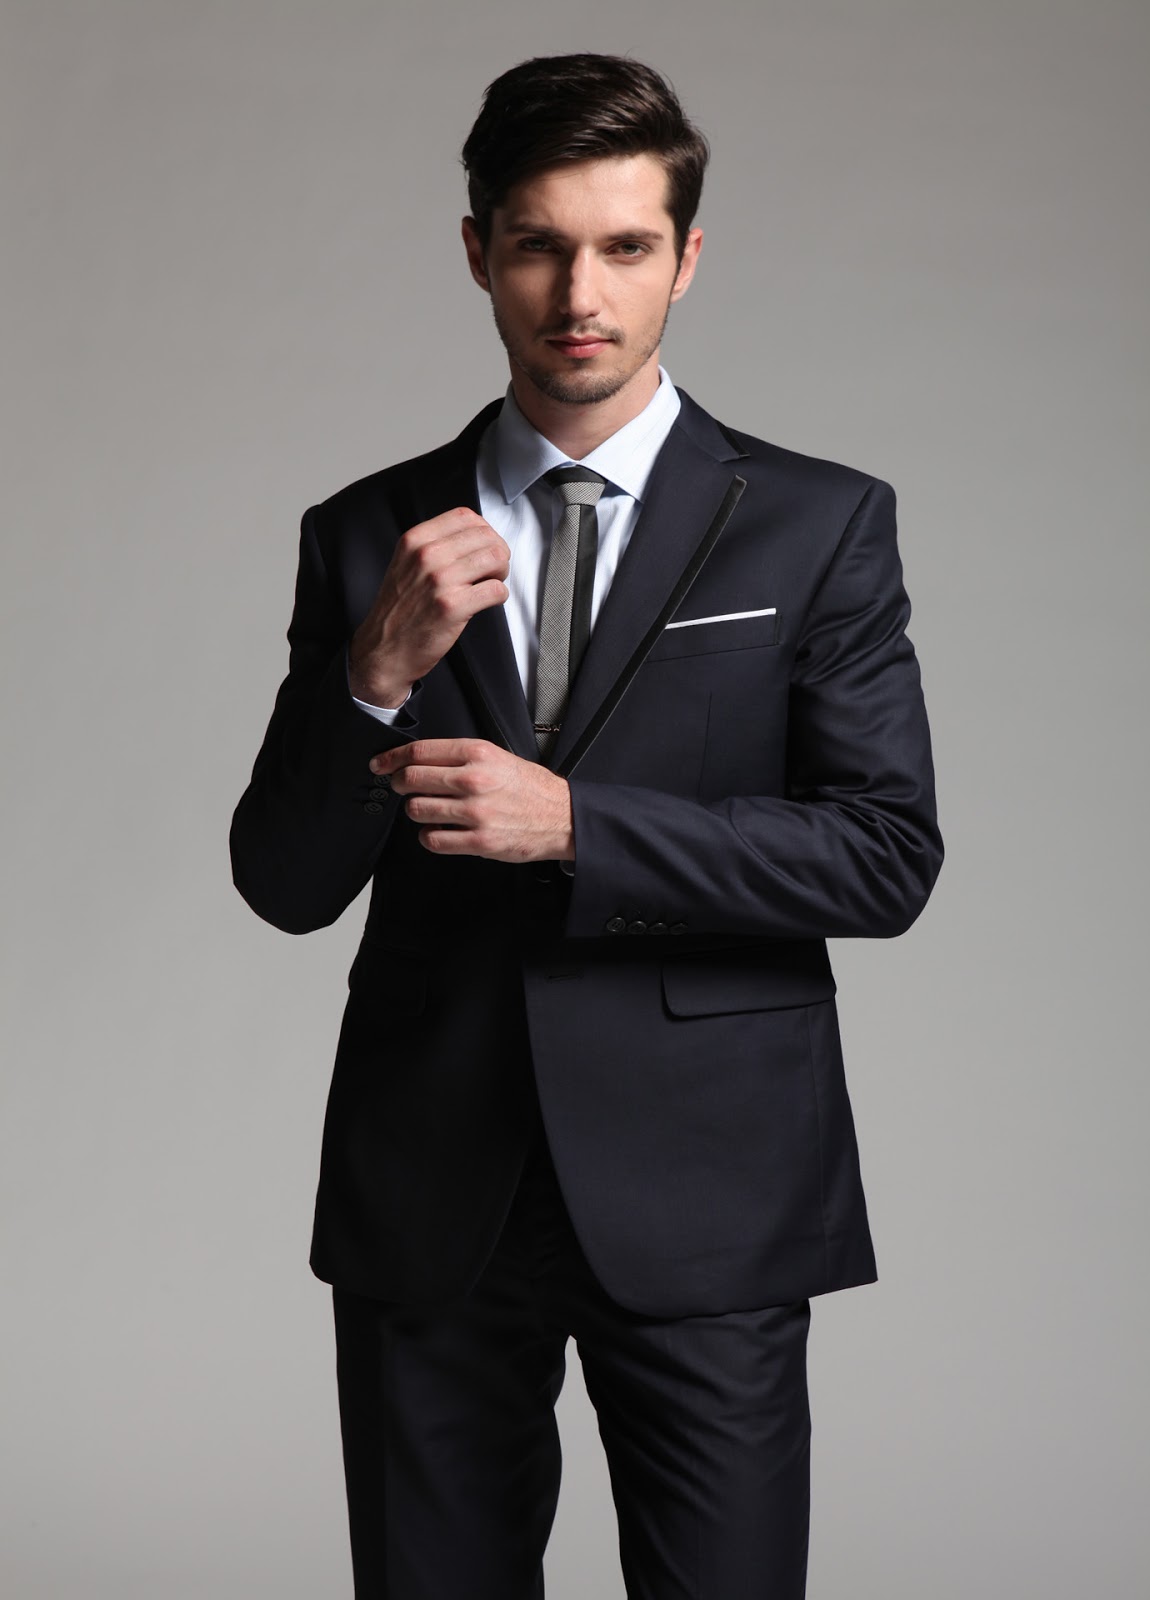 wedding-suit-blog-men-s-professional-suits